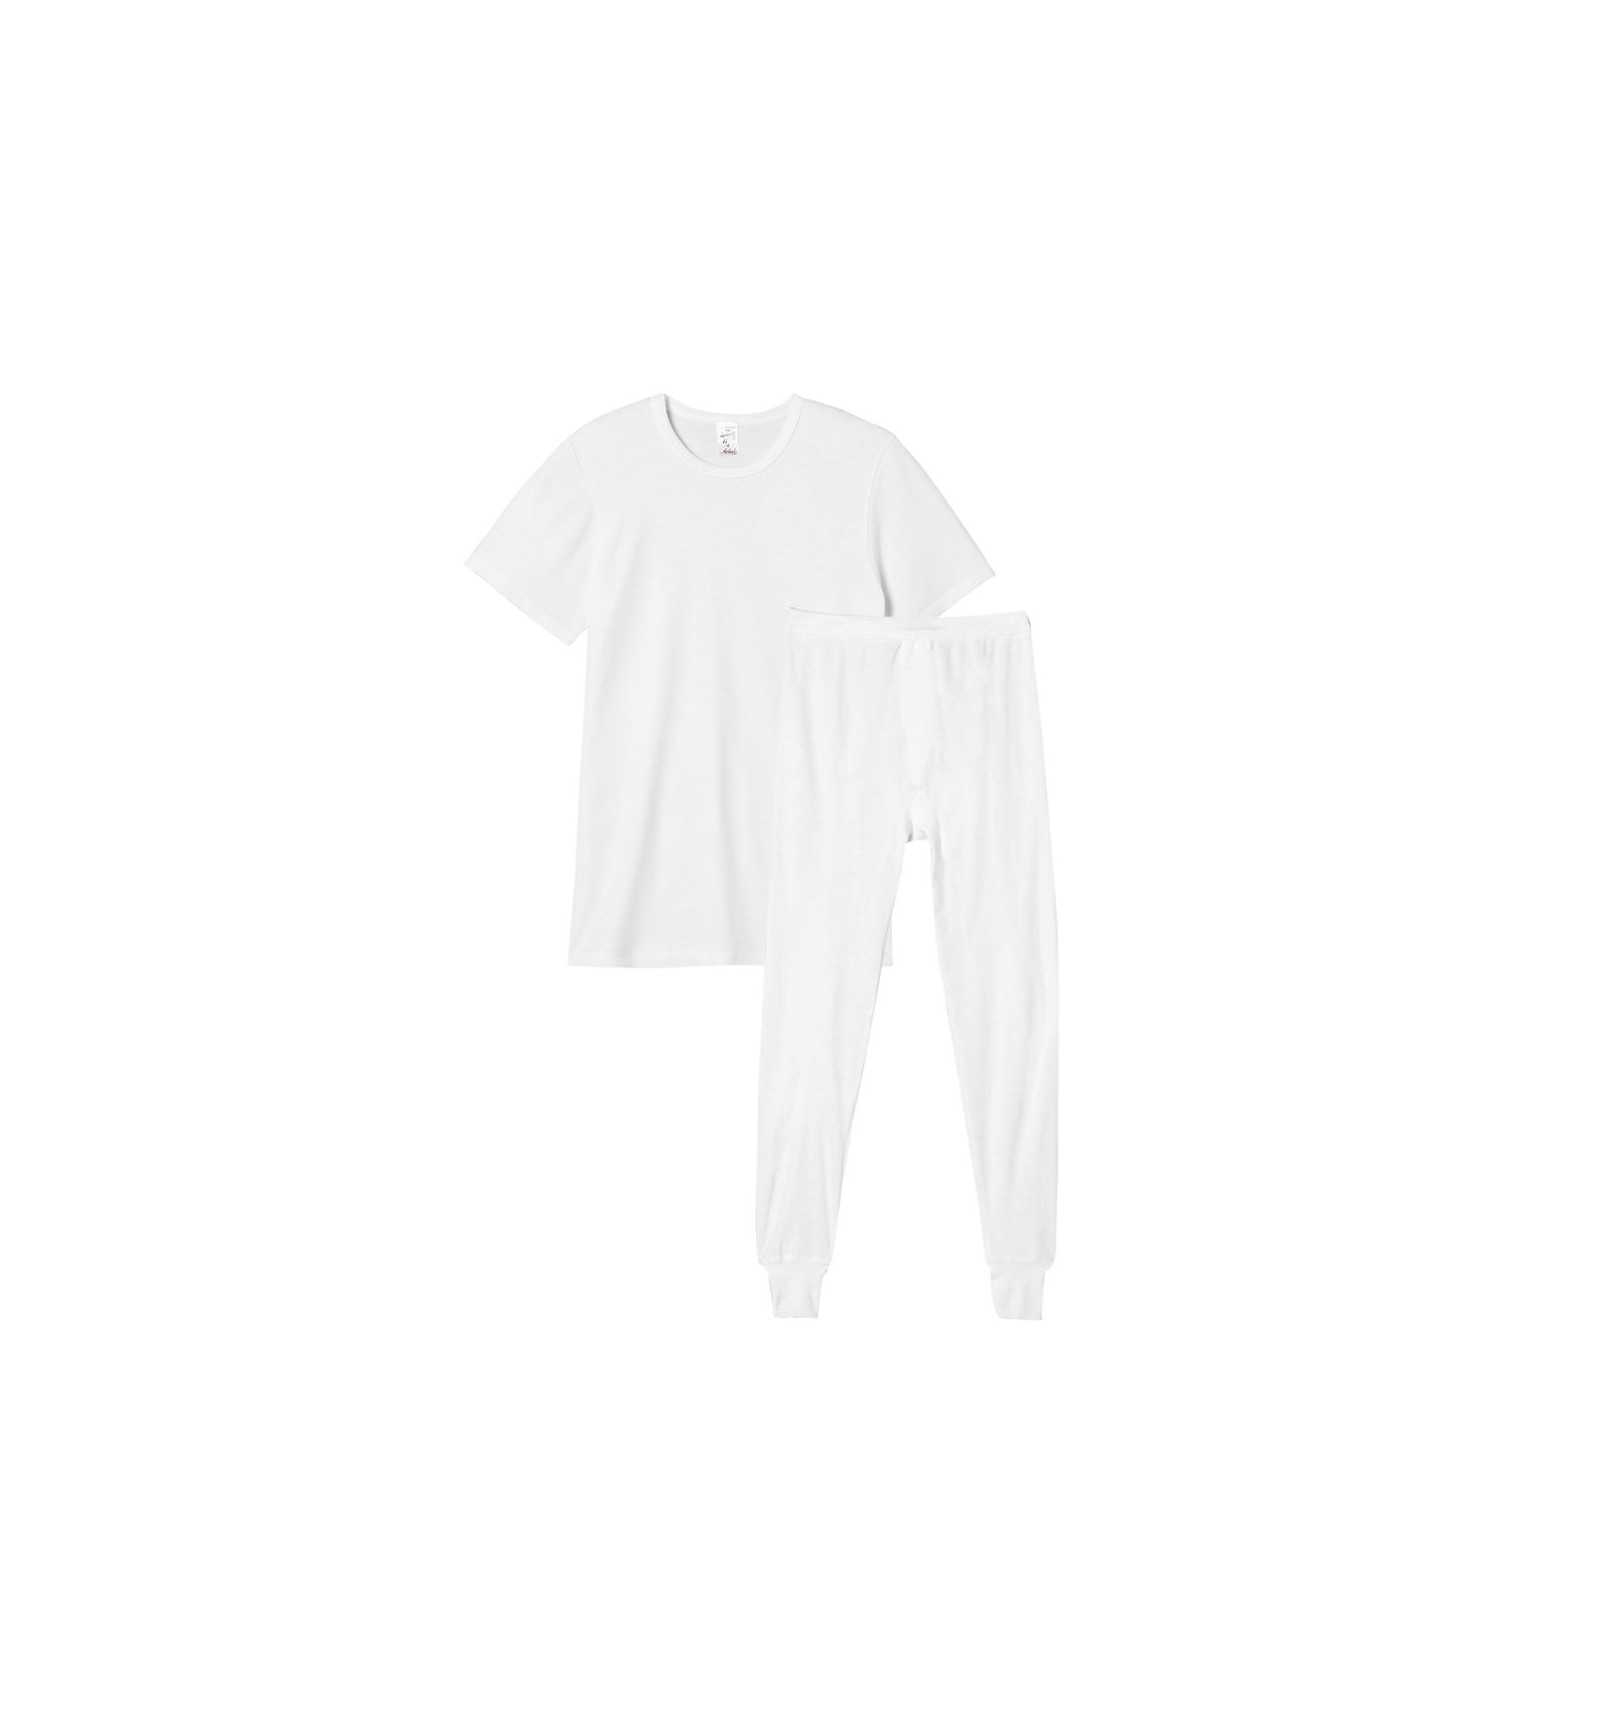 T-shirt Thermique Femme - Manches Longues - Blanc - Achel par Lemahieu -  Marques de France